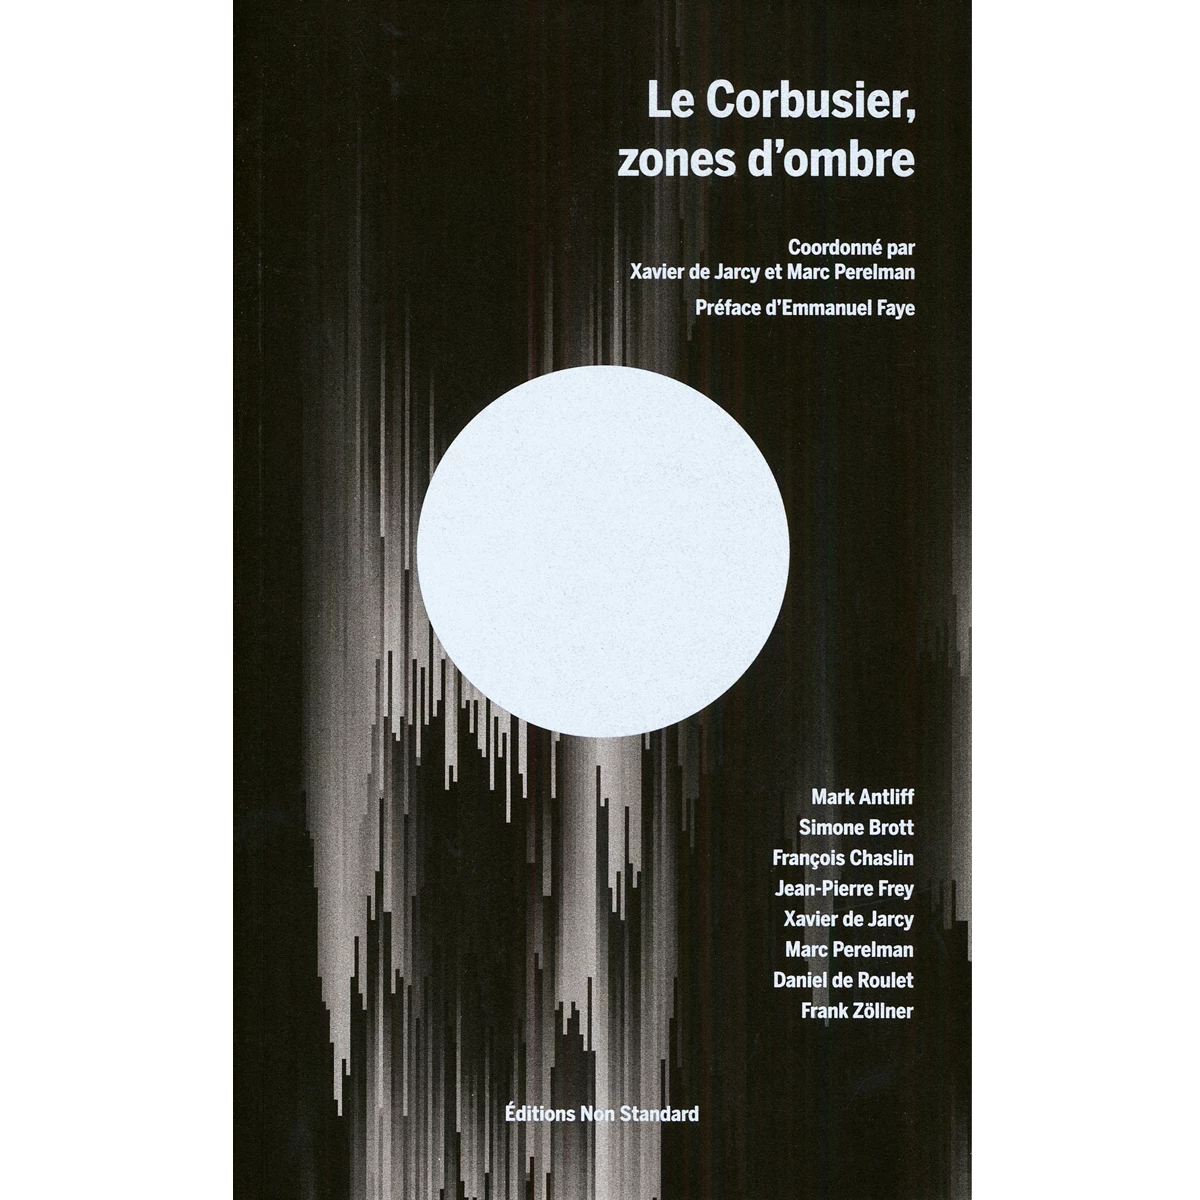 Le Corbusier, zones d’ombre